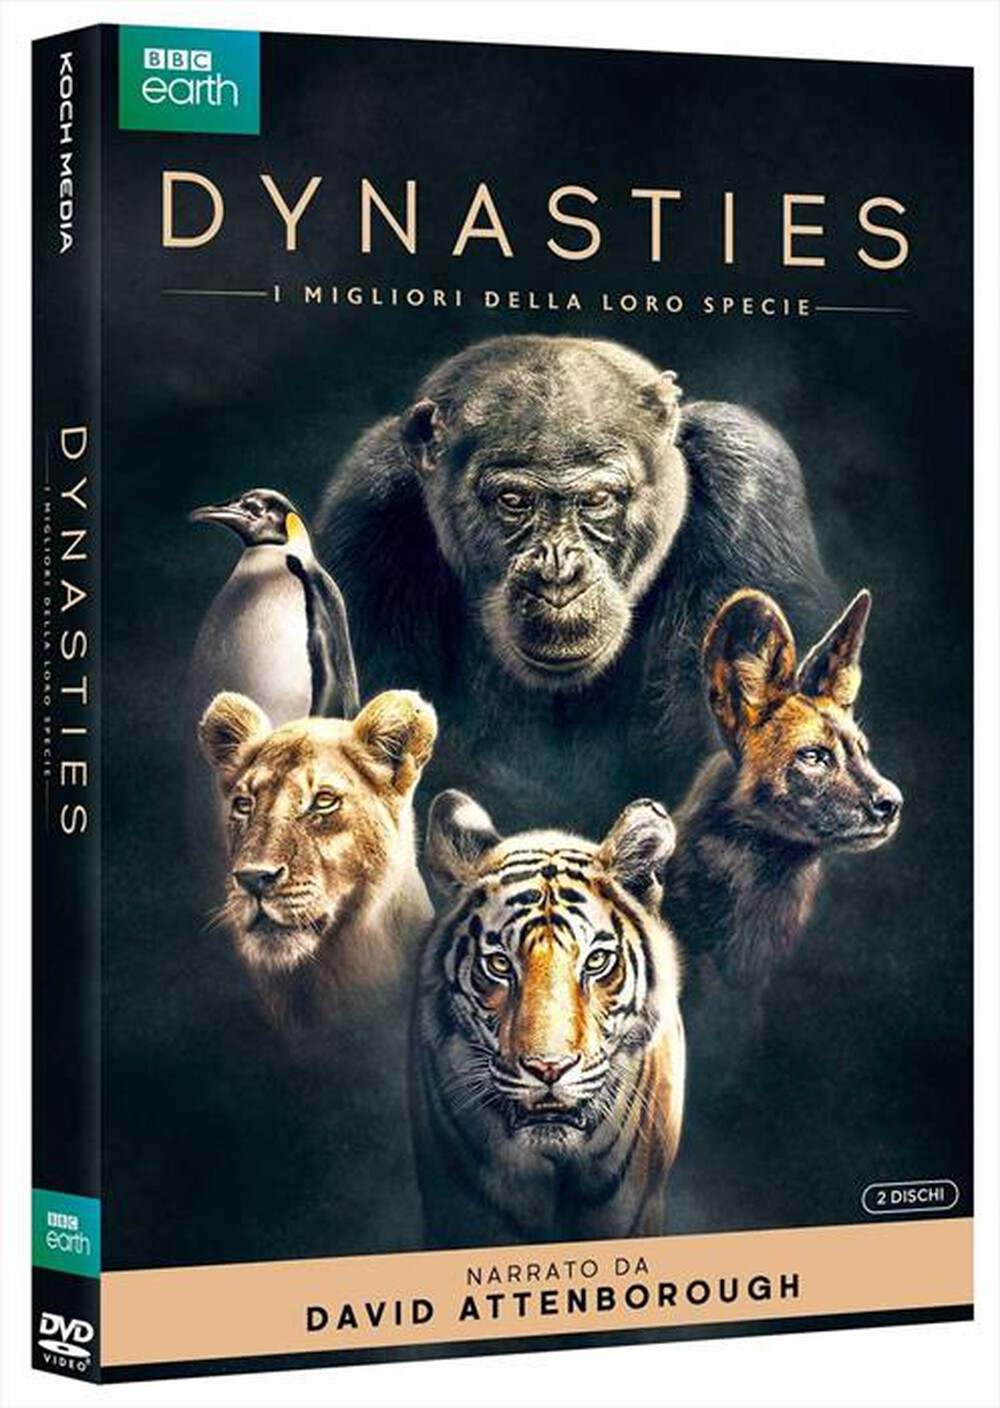 "BBC - Dynasties - I Migliori Della Loro Specie (2 Dvd)"